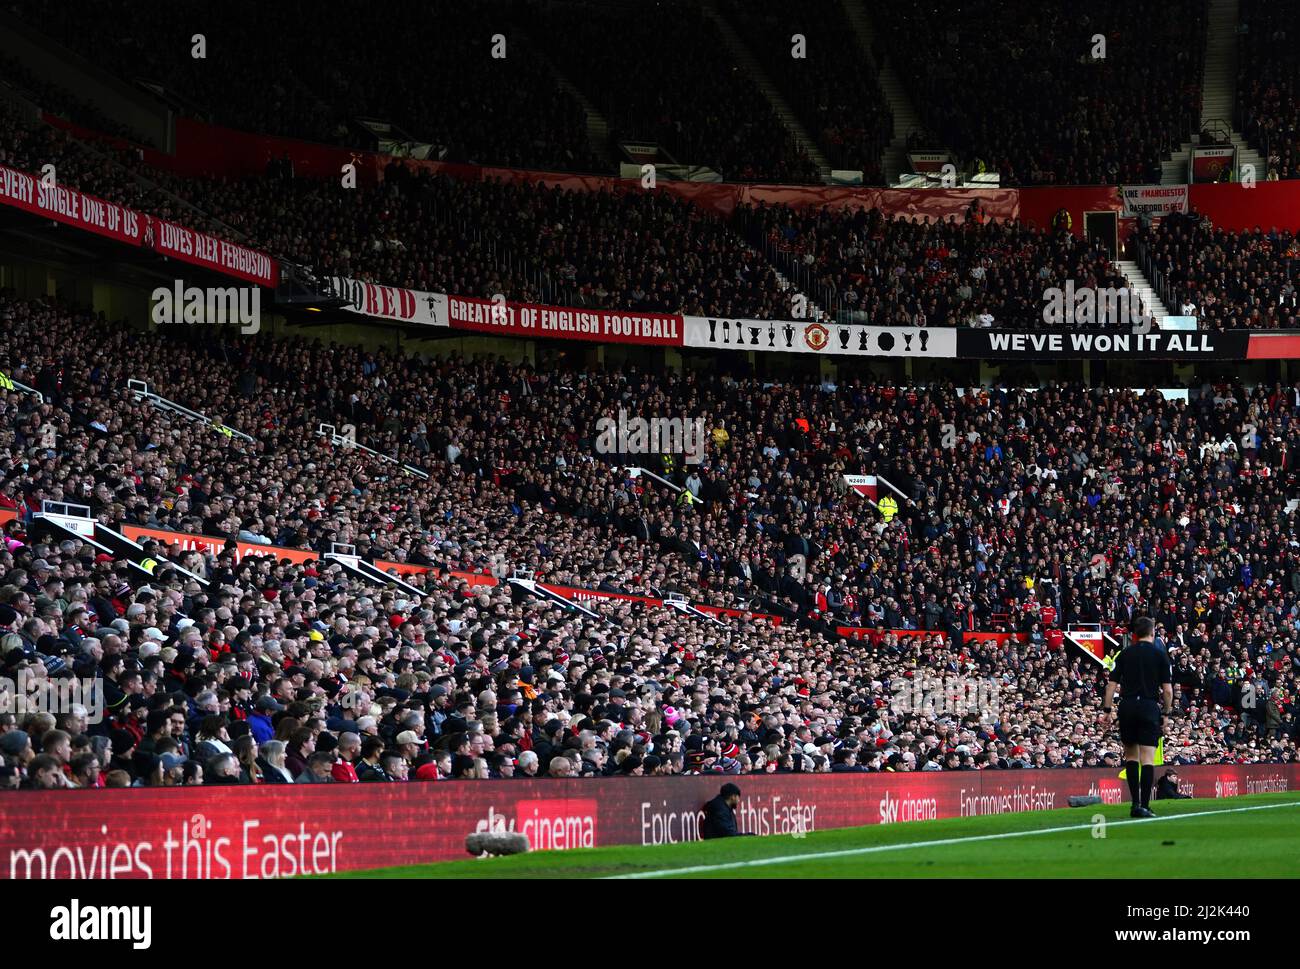 Eine allgemeine Ansicht der Fans auf den Tribünen während des Spiels in der Premier League in Old Trafford, Manchester. Bilddatum: Samstag, 2. April 2022. Stockfoto